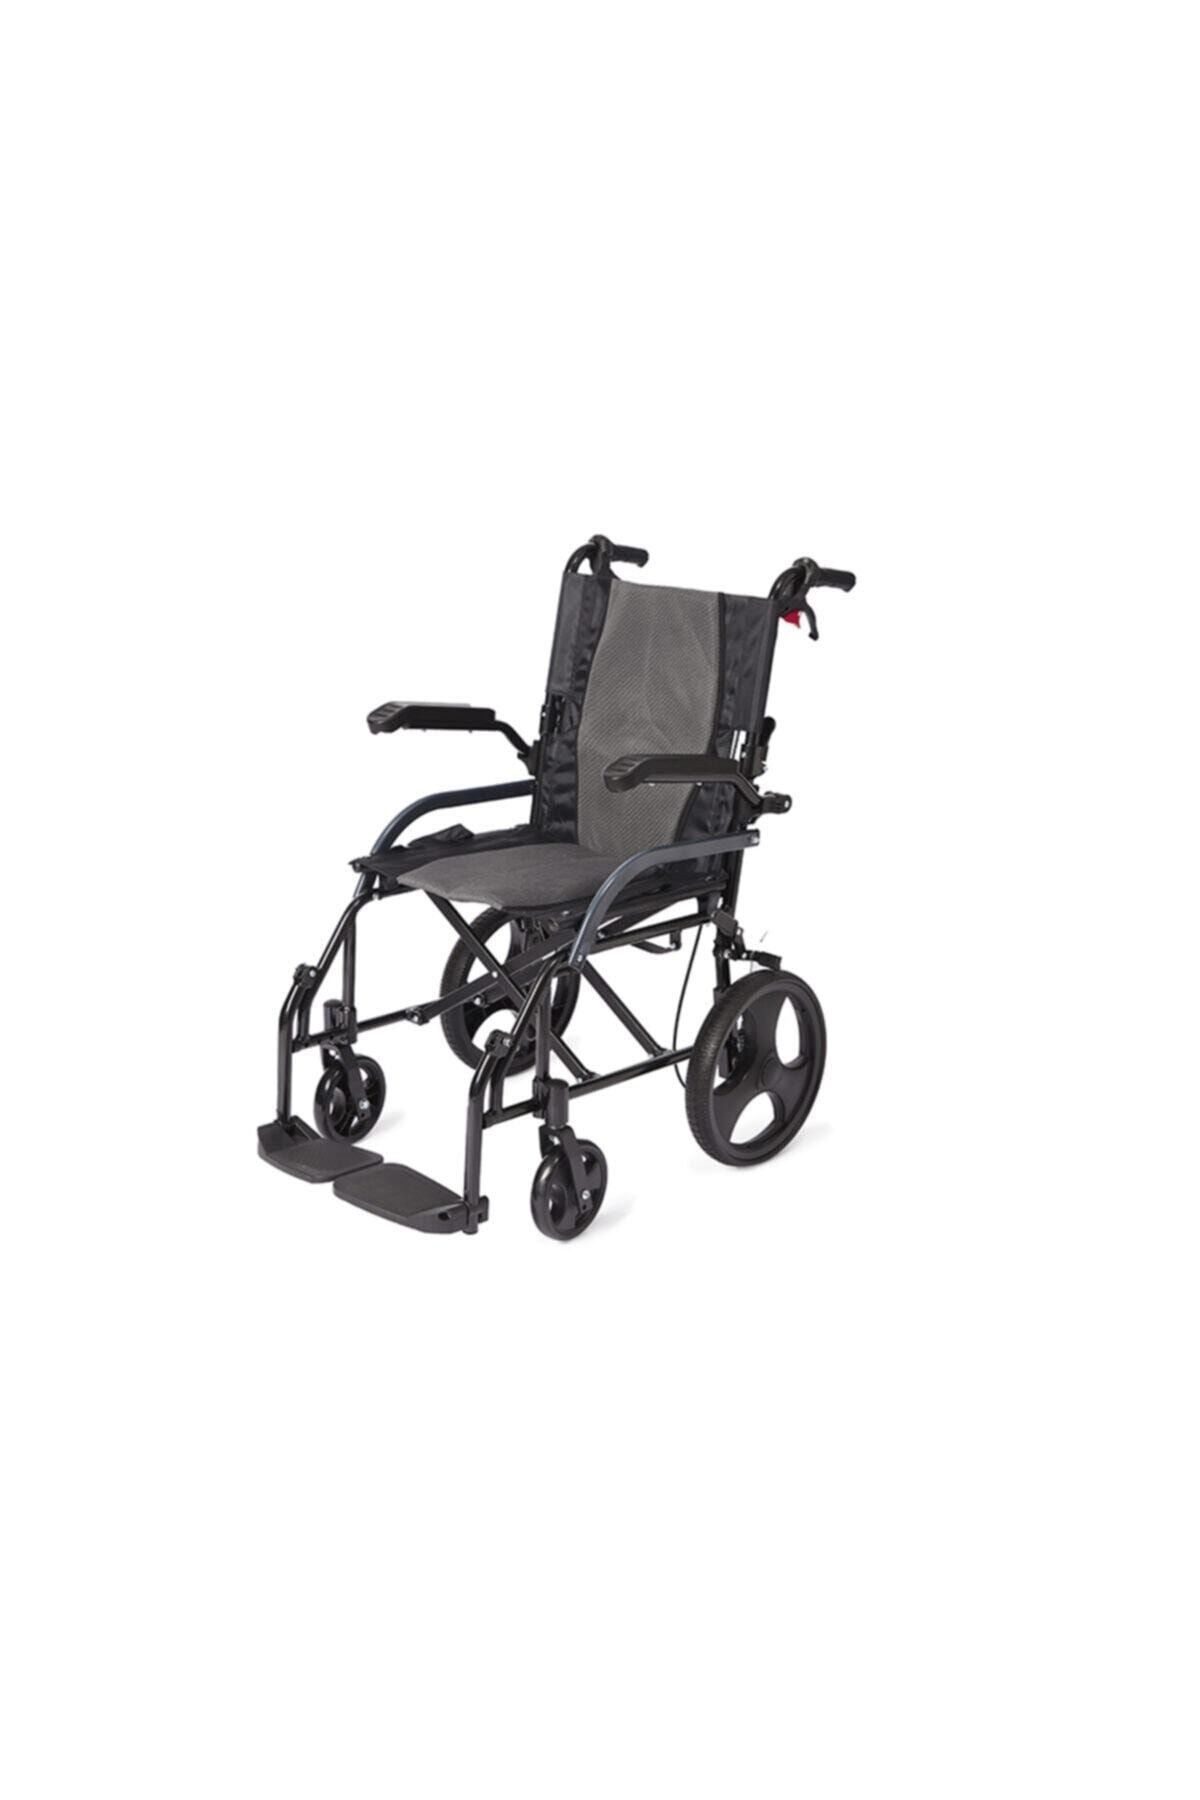 Refakatçi Tekerlekli Sanalye Engelli Tekerlekli Hasta Taşıma Transfer Sandalyesi